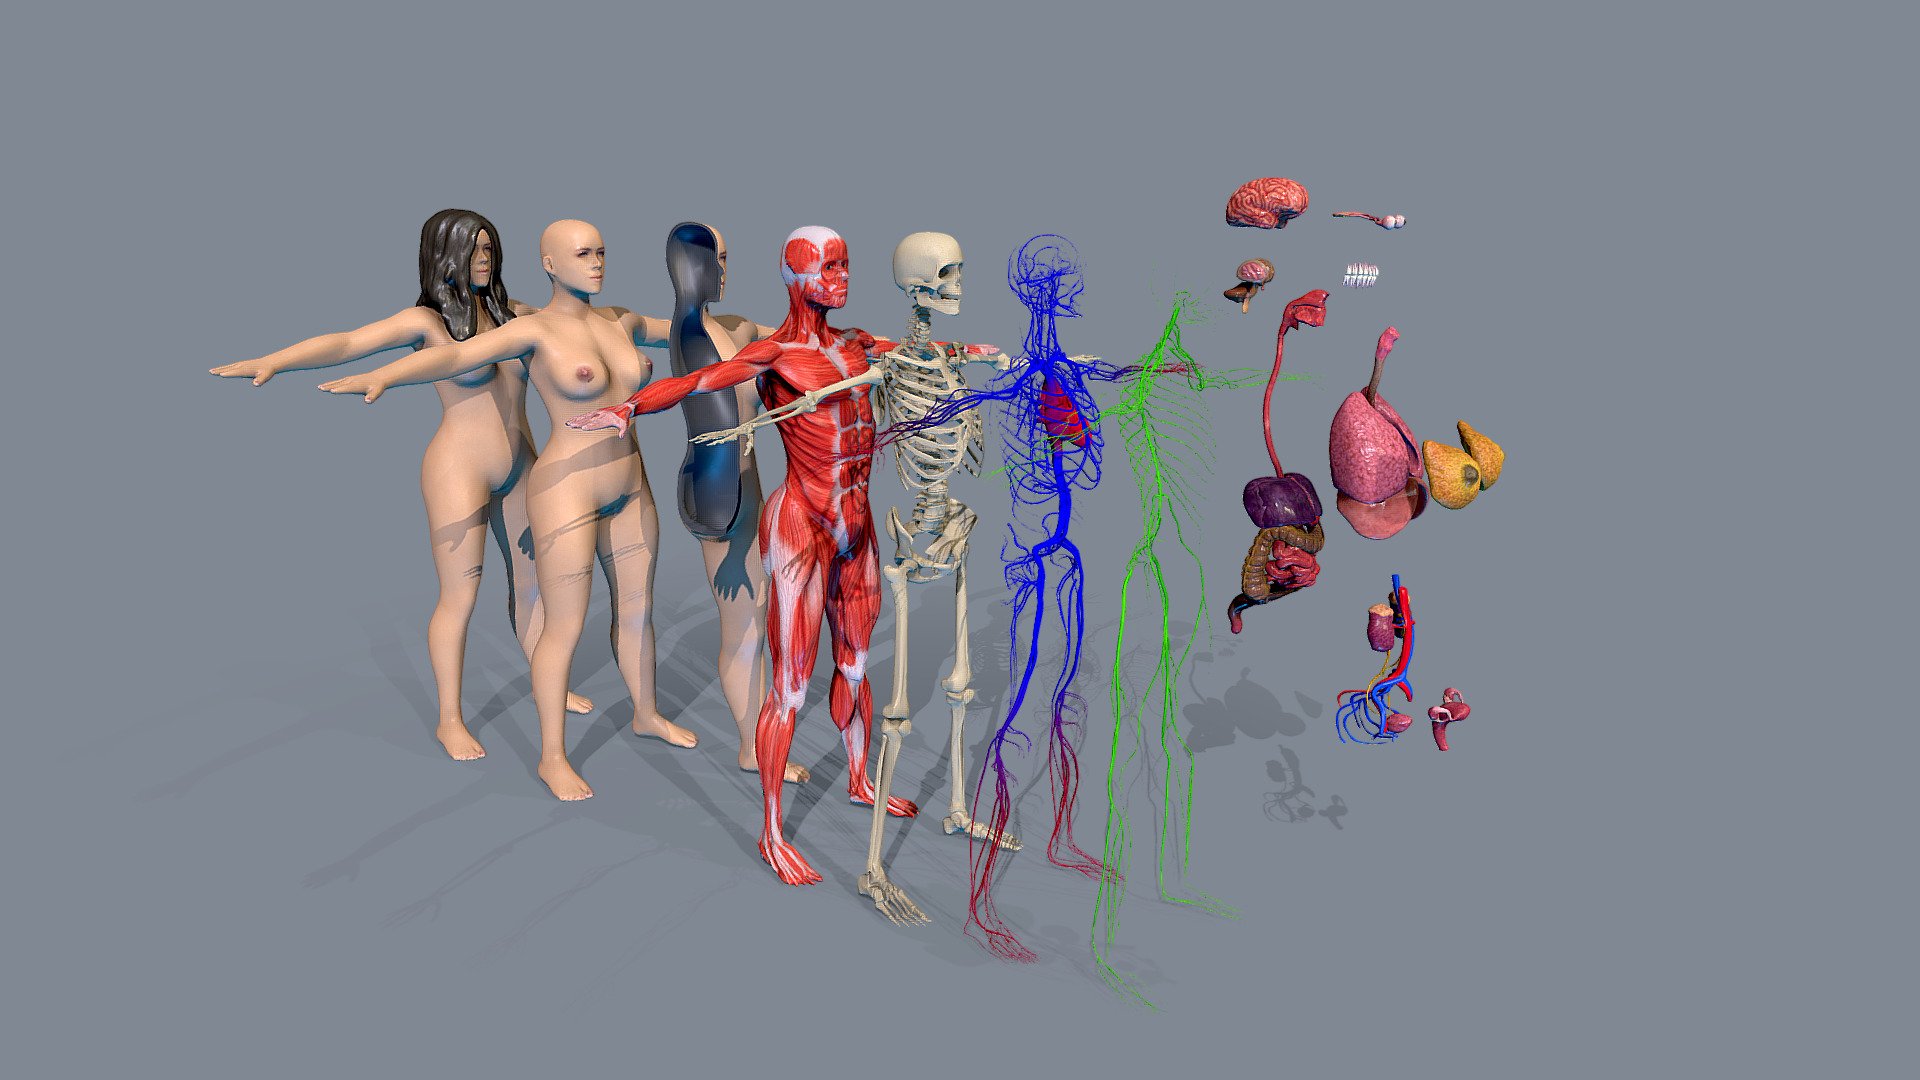 Female Human Body Anatomy All Systems - Buy Royalty Free 3D model by  flarar-01 (@flarar) [95b63a1]